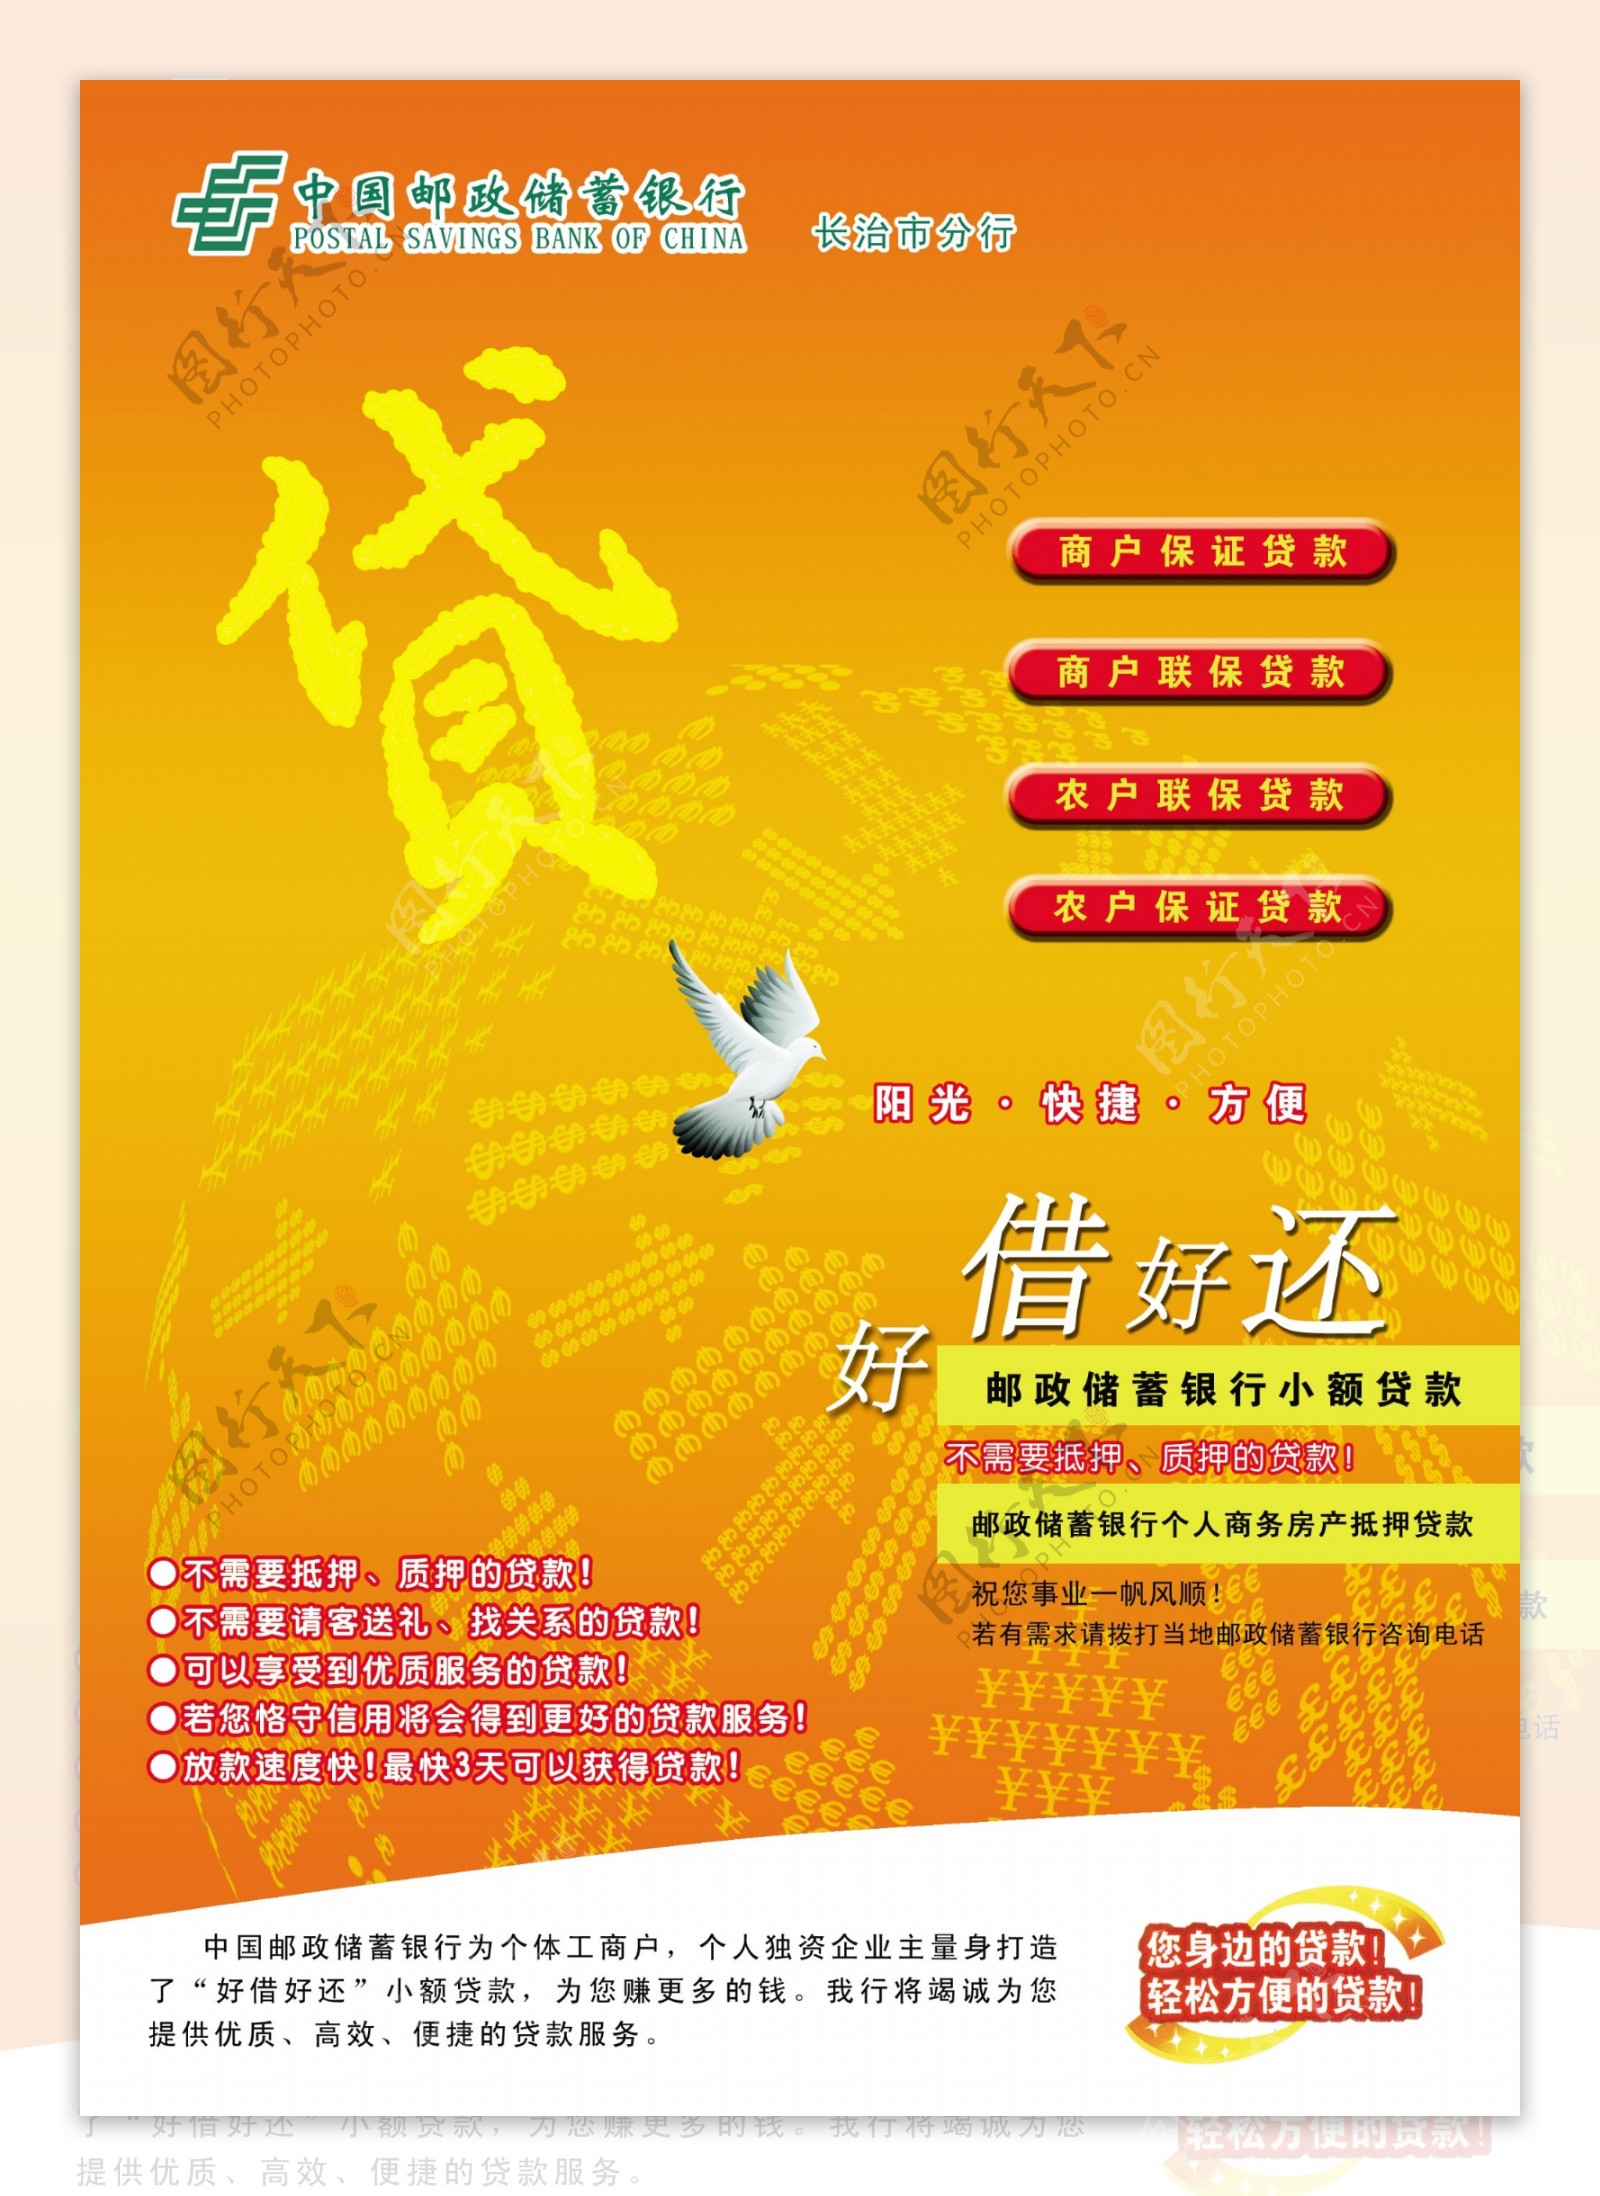 中国邮政储蓄银行贷款广告